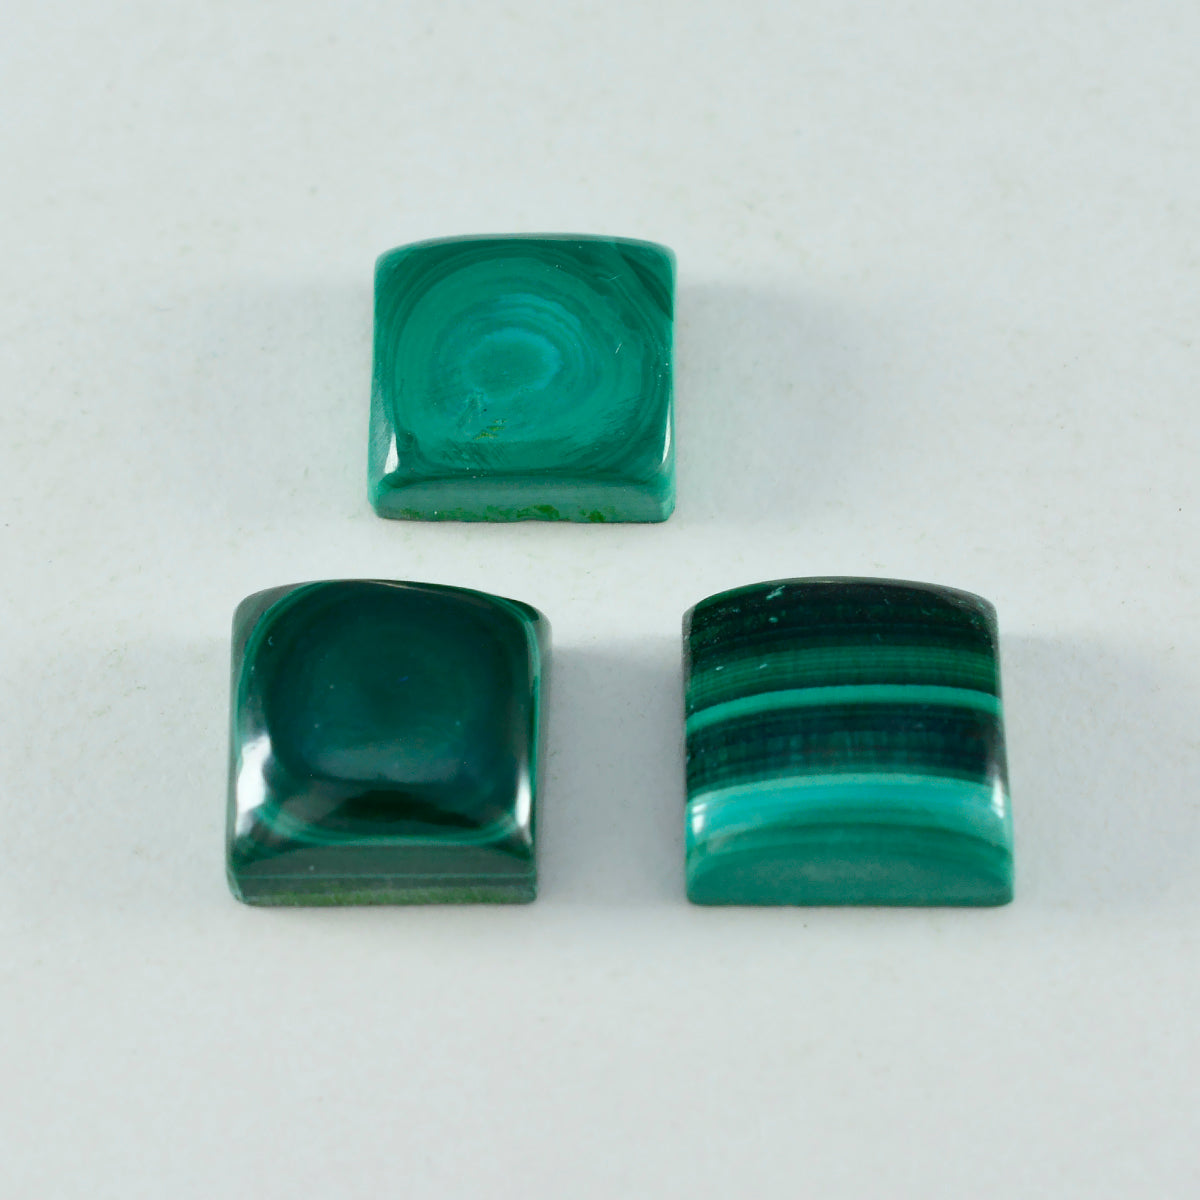 Riyogems 1 Stück grüner Malachit-Cabochon, 13 x 13 mm, quadratische Form, A+1-Qualität, loser Edelstein